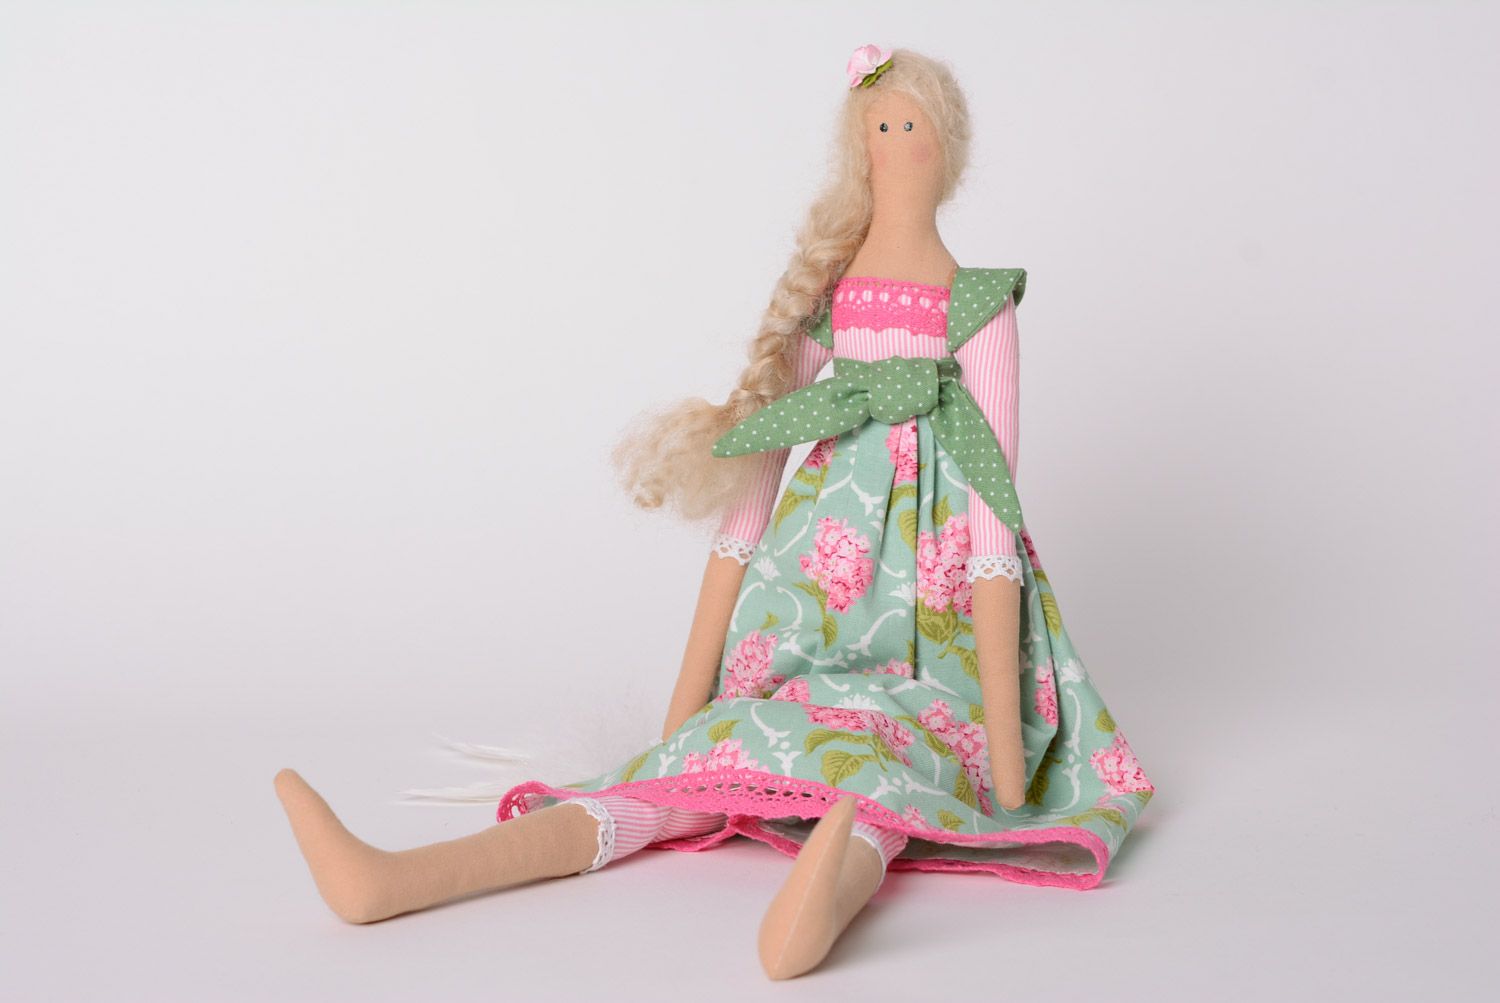 Игрушка кукла из ткани с длинной косой в платье красивая ручной работы милая фото 1